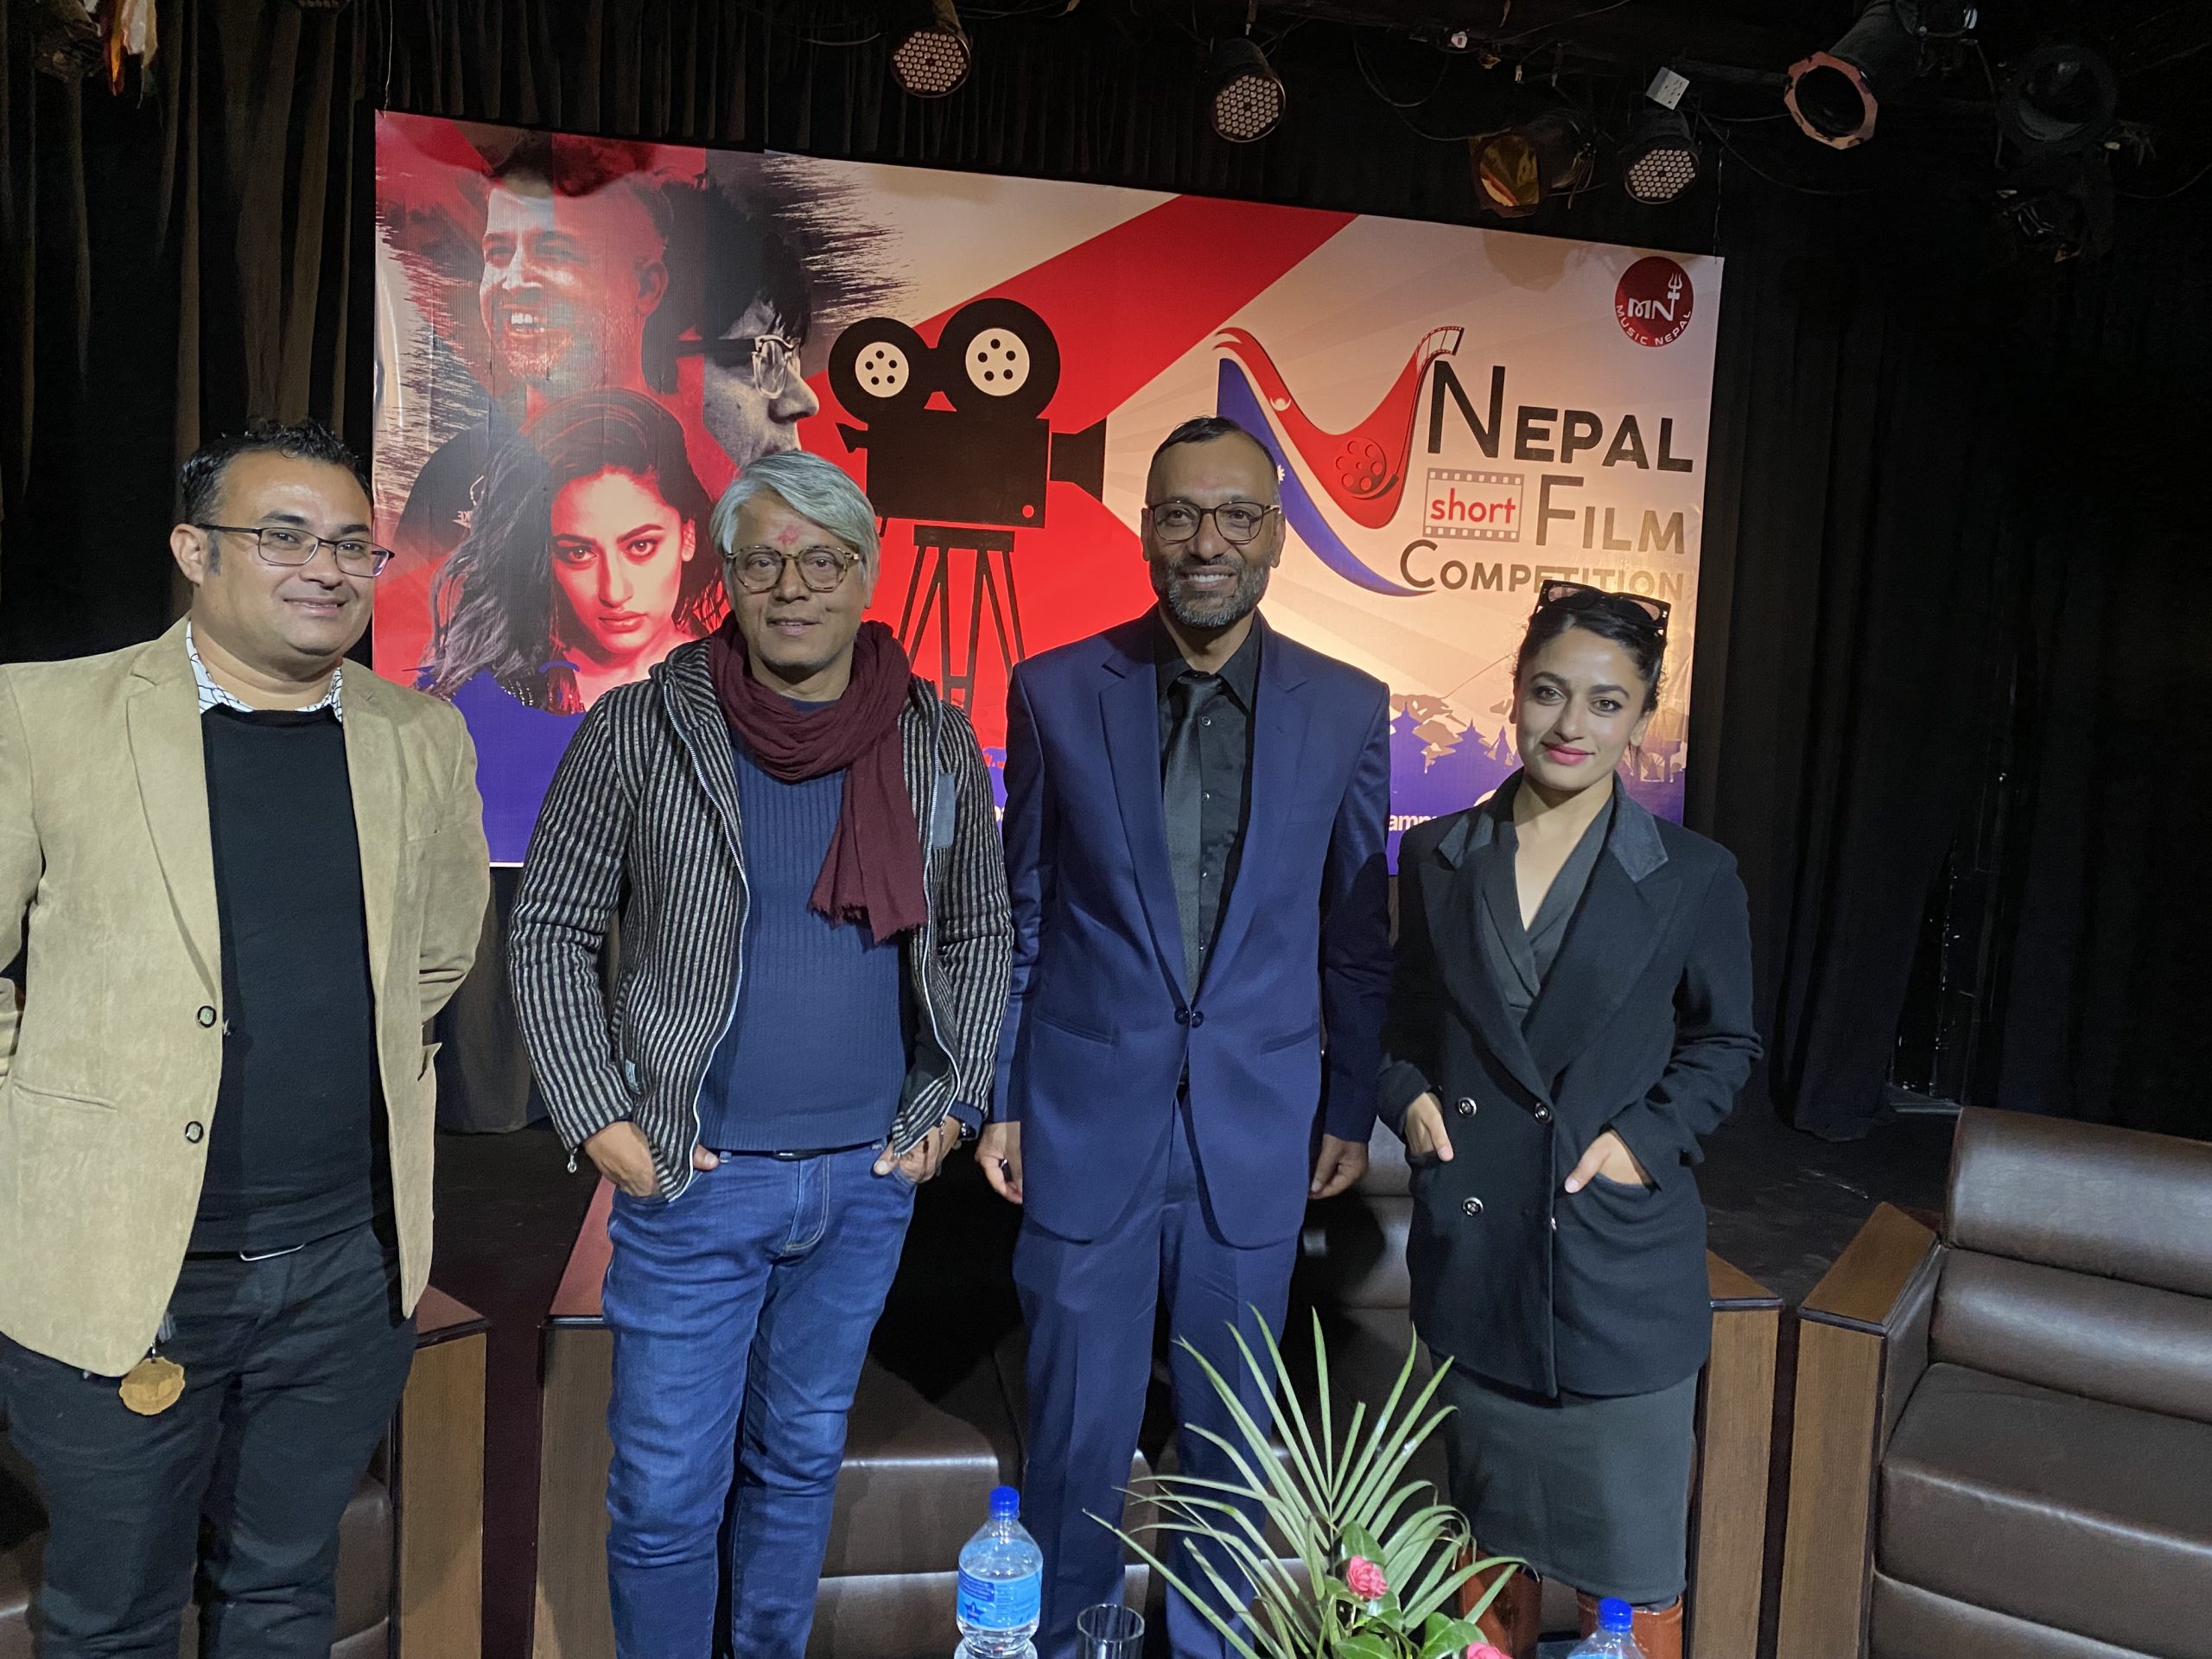 म्युजिक नेपाल र नेपाल फिल्म क्याम्पस मिलेर सर्ट फिल्म प्रतिस्पर्धा गर्ने, विजेता फिल्मलाई २ लाख